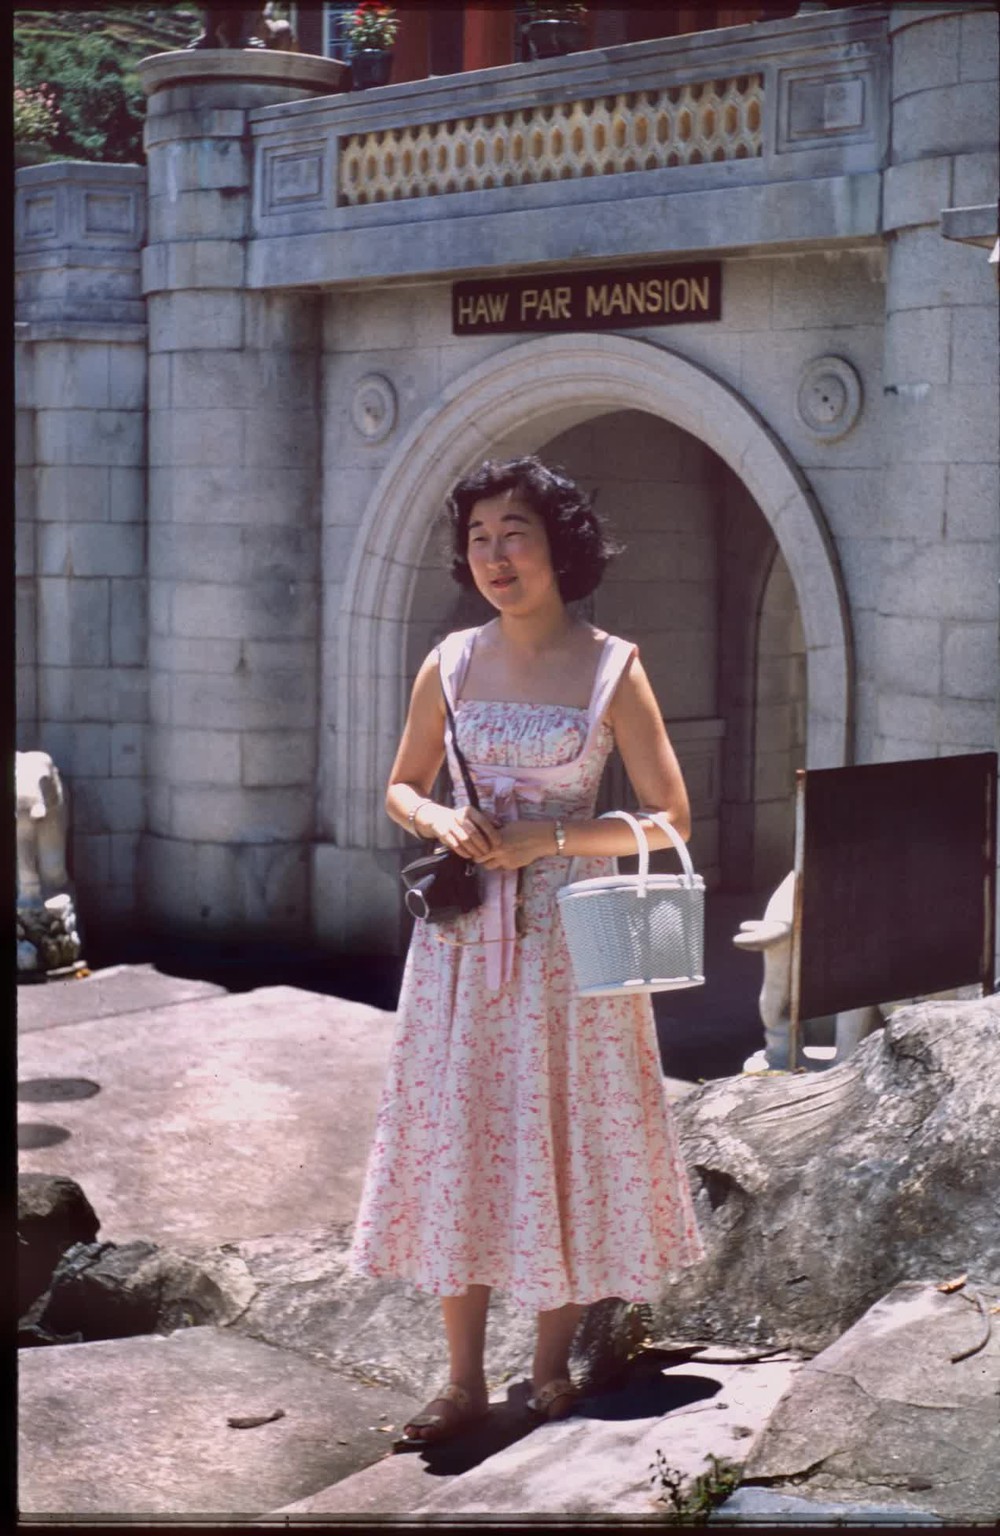 Bộ ảnh hiếm ghi lại cuộc sống ở Hàn Quốc 70 năm trước: Thời trang hoàn toàn khác biệt, tụ điểm nổi tiếng lại hoang sơ khó ai nhận ra - Ảnh 1.